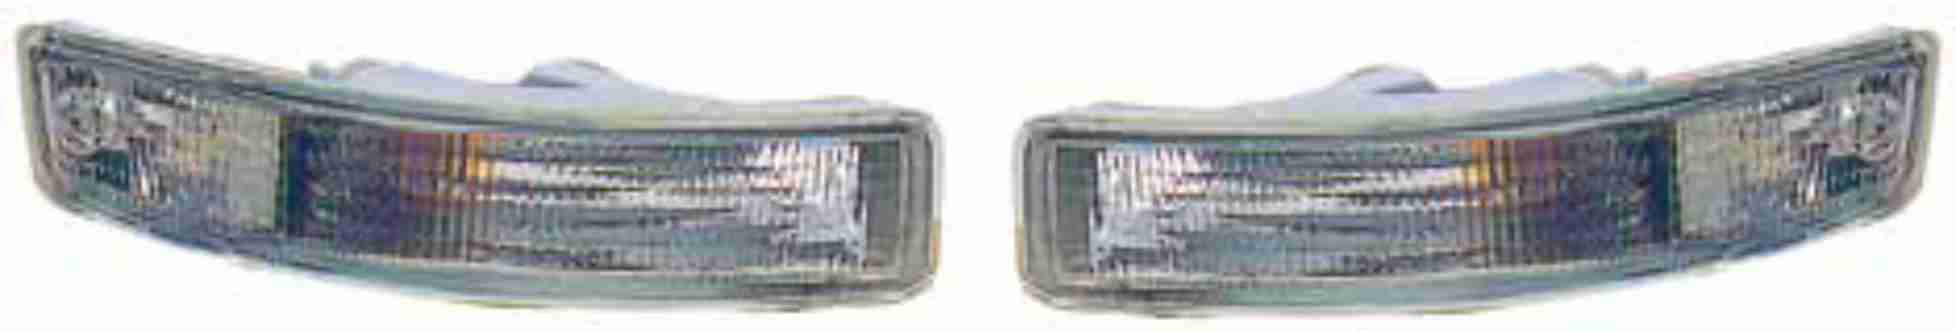 BUM501629 - COROLLA AE100 BUMPER LAMP SHORT CRYSTAL PAIRS...2005157